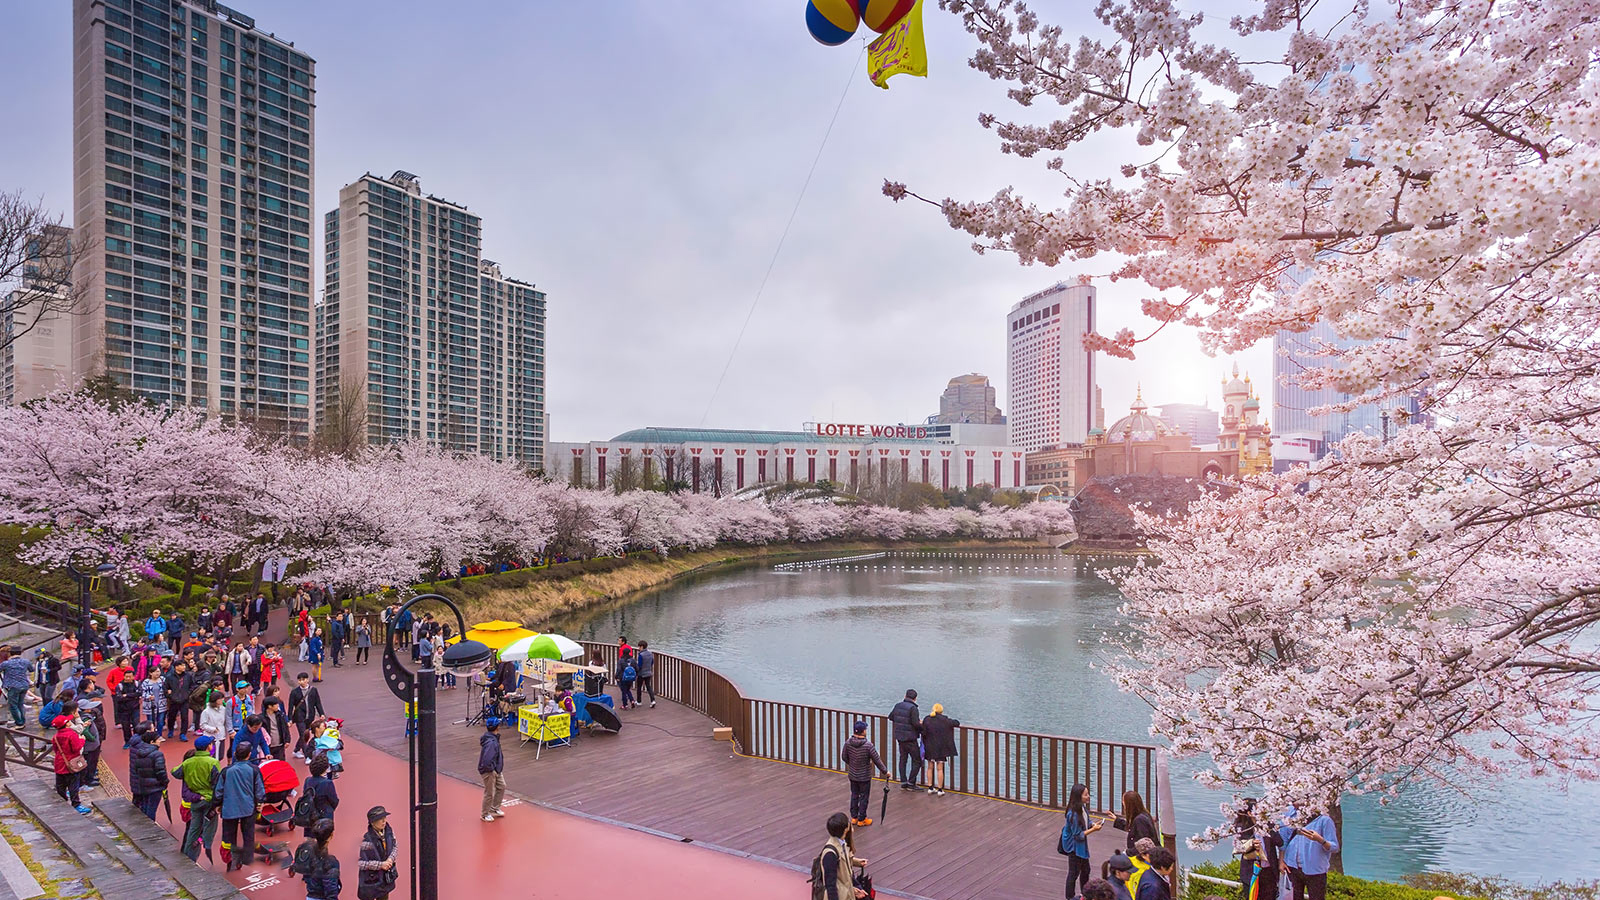 CT2: SEOUL – LÀNG CỔ BUKCHON EVERLAND–ĐẢO NAMI 2019